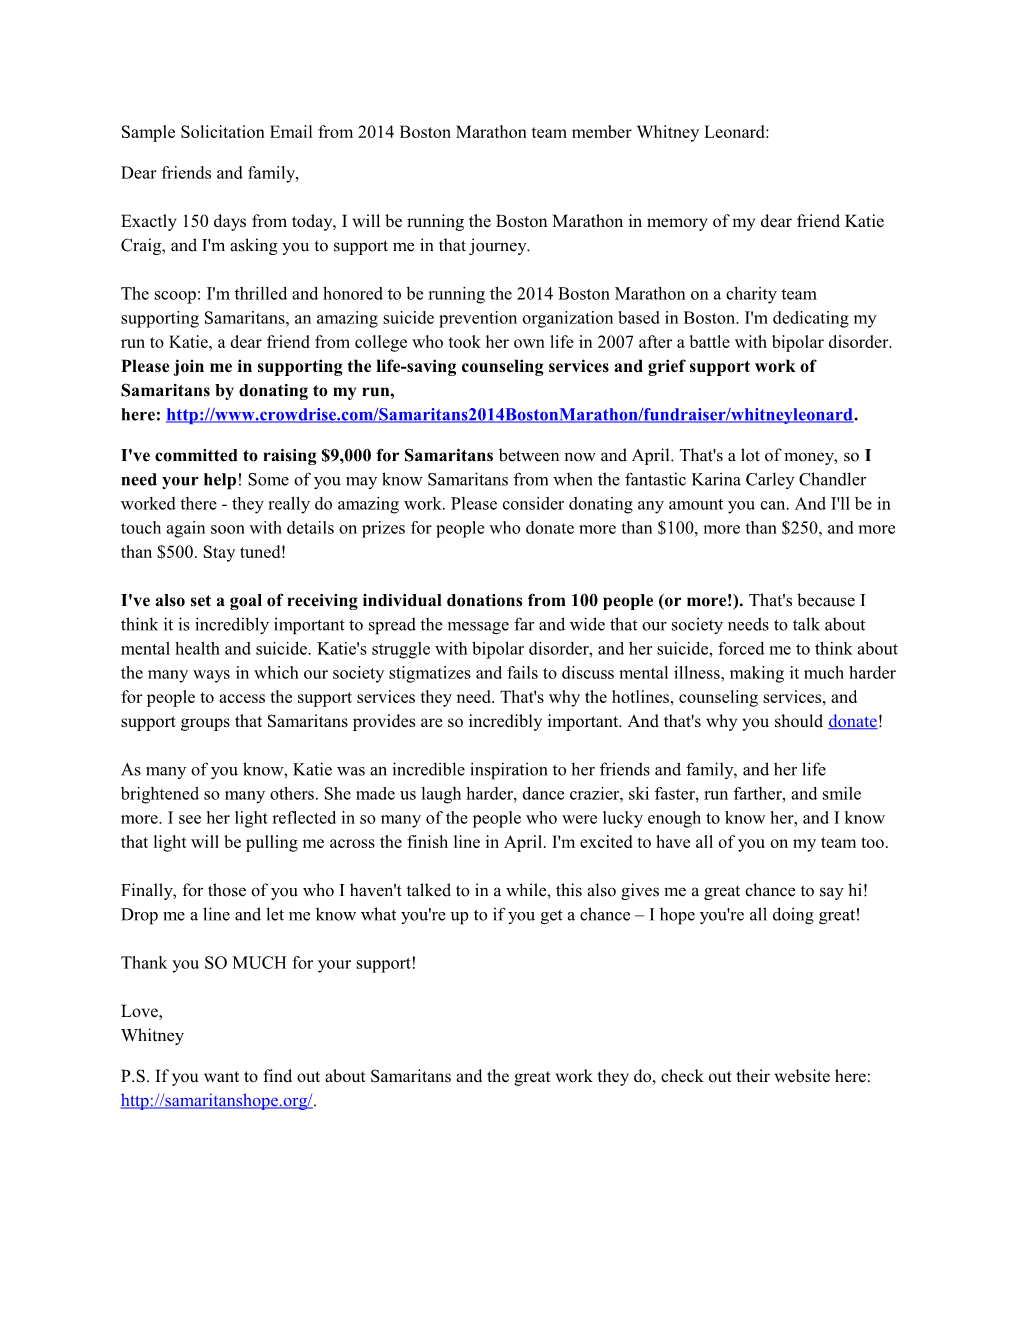 Sample Solicitation Email from 2014 Boston Marathon Team Member Whitney Leonard